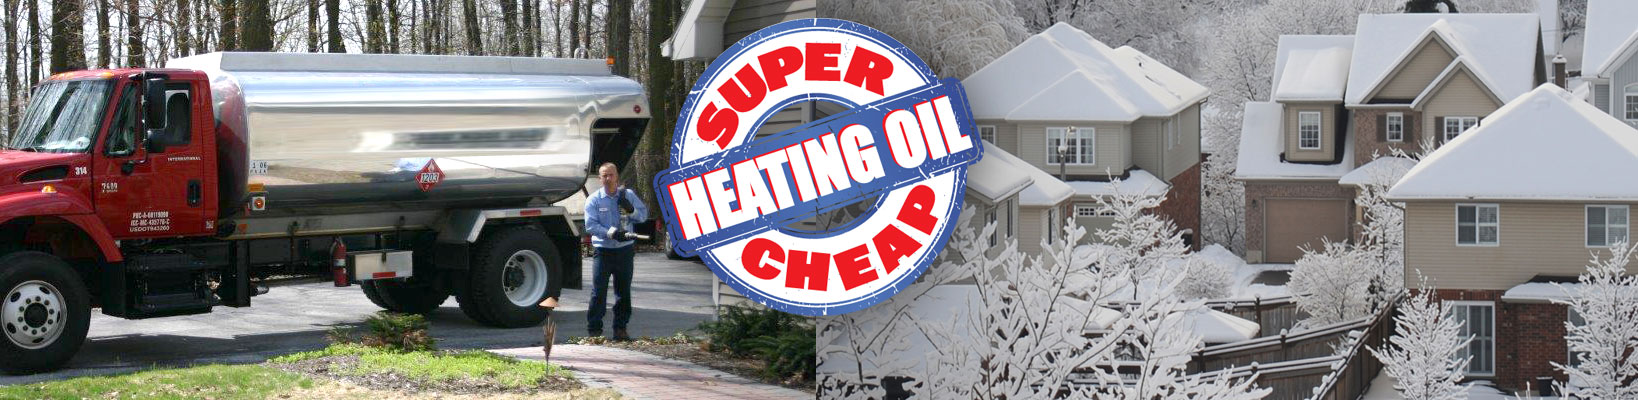 Super Cheap Heating Oil